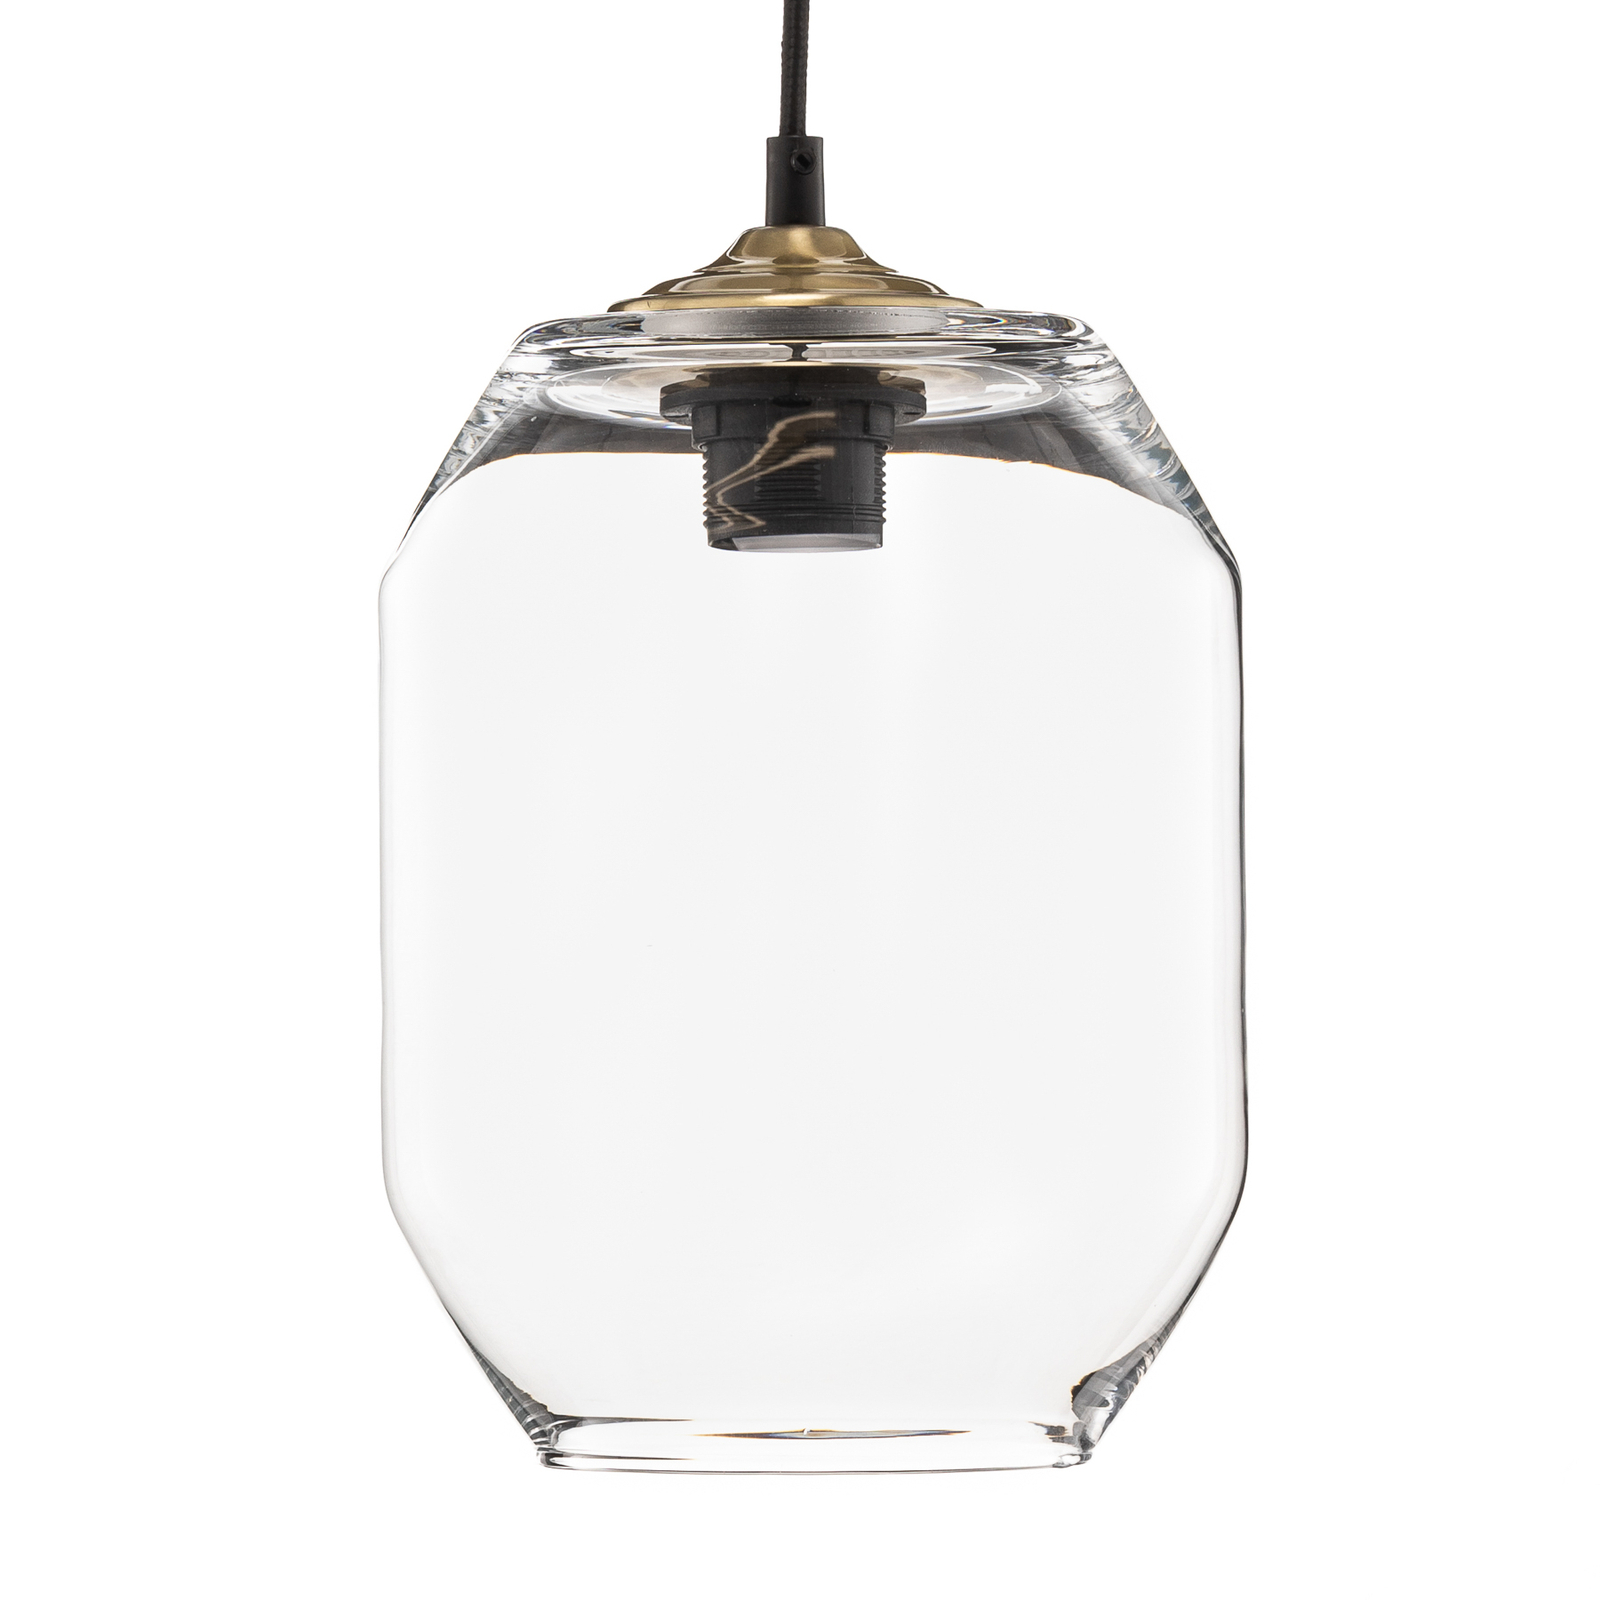 Barrel hanging light made of clear handblown glass